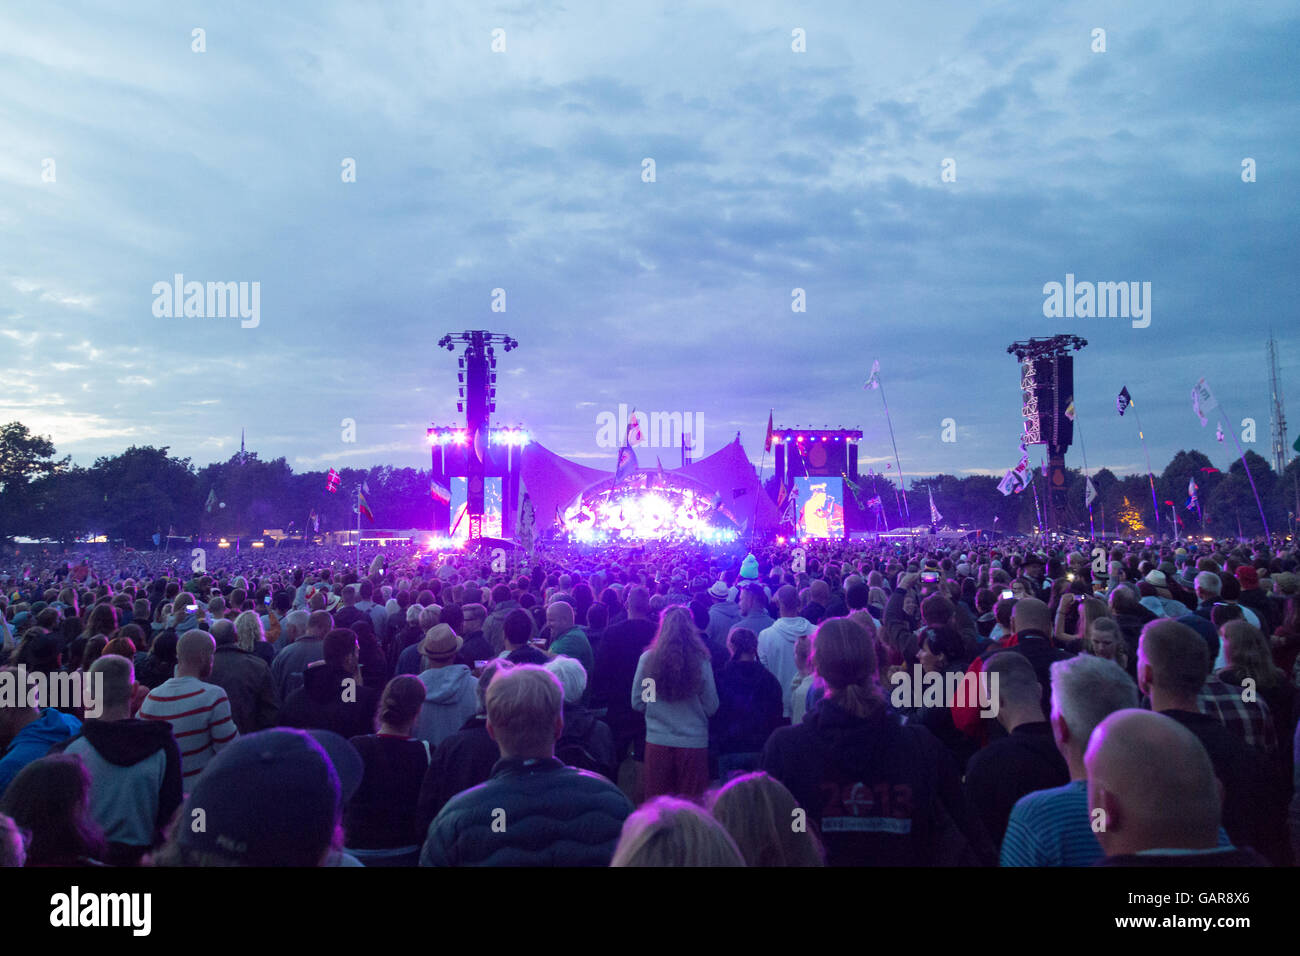 Roskilde, Danemark - 29 juin 2016 : foule de spectateurs profitant d'un concert au stade orange à Roskilde Festival 2016 Banque D'Images